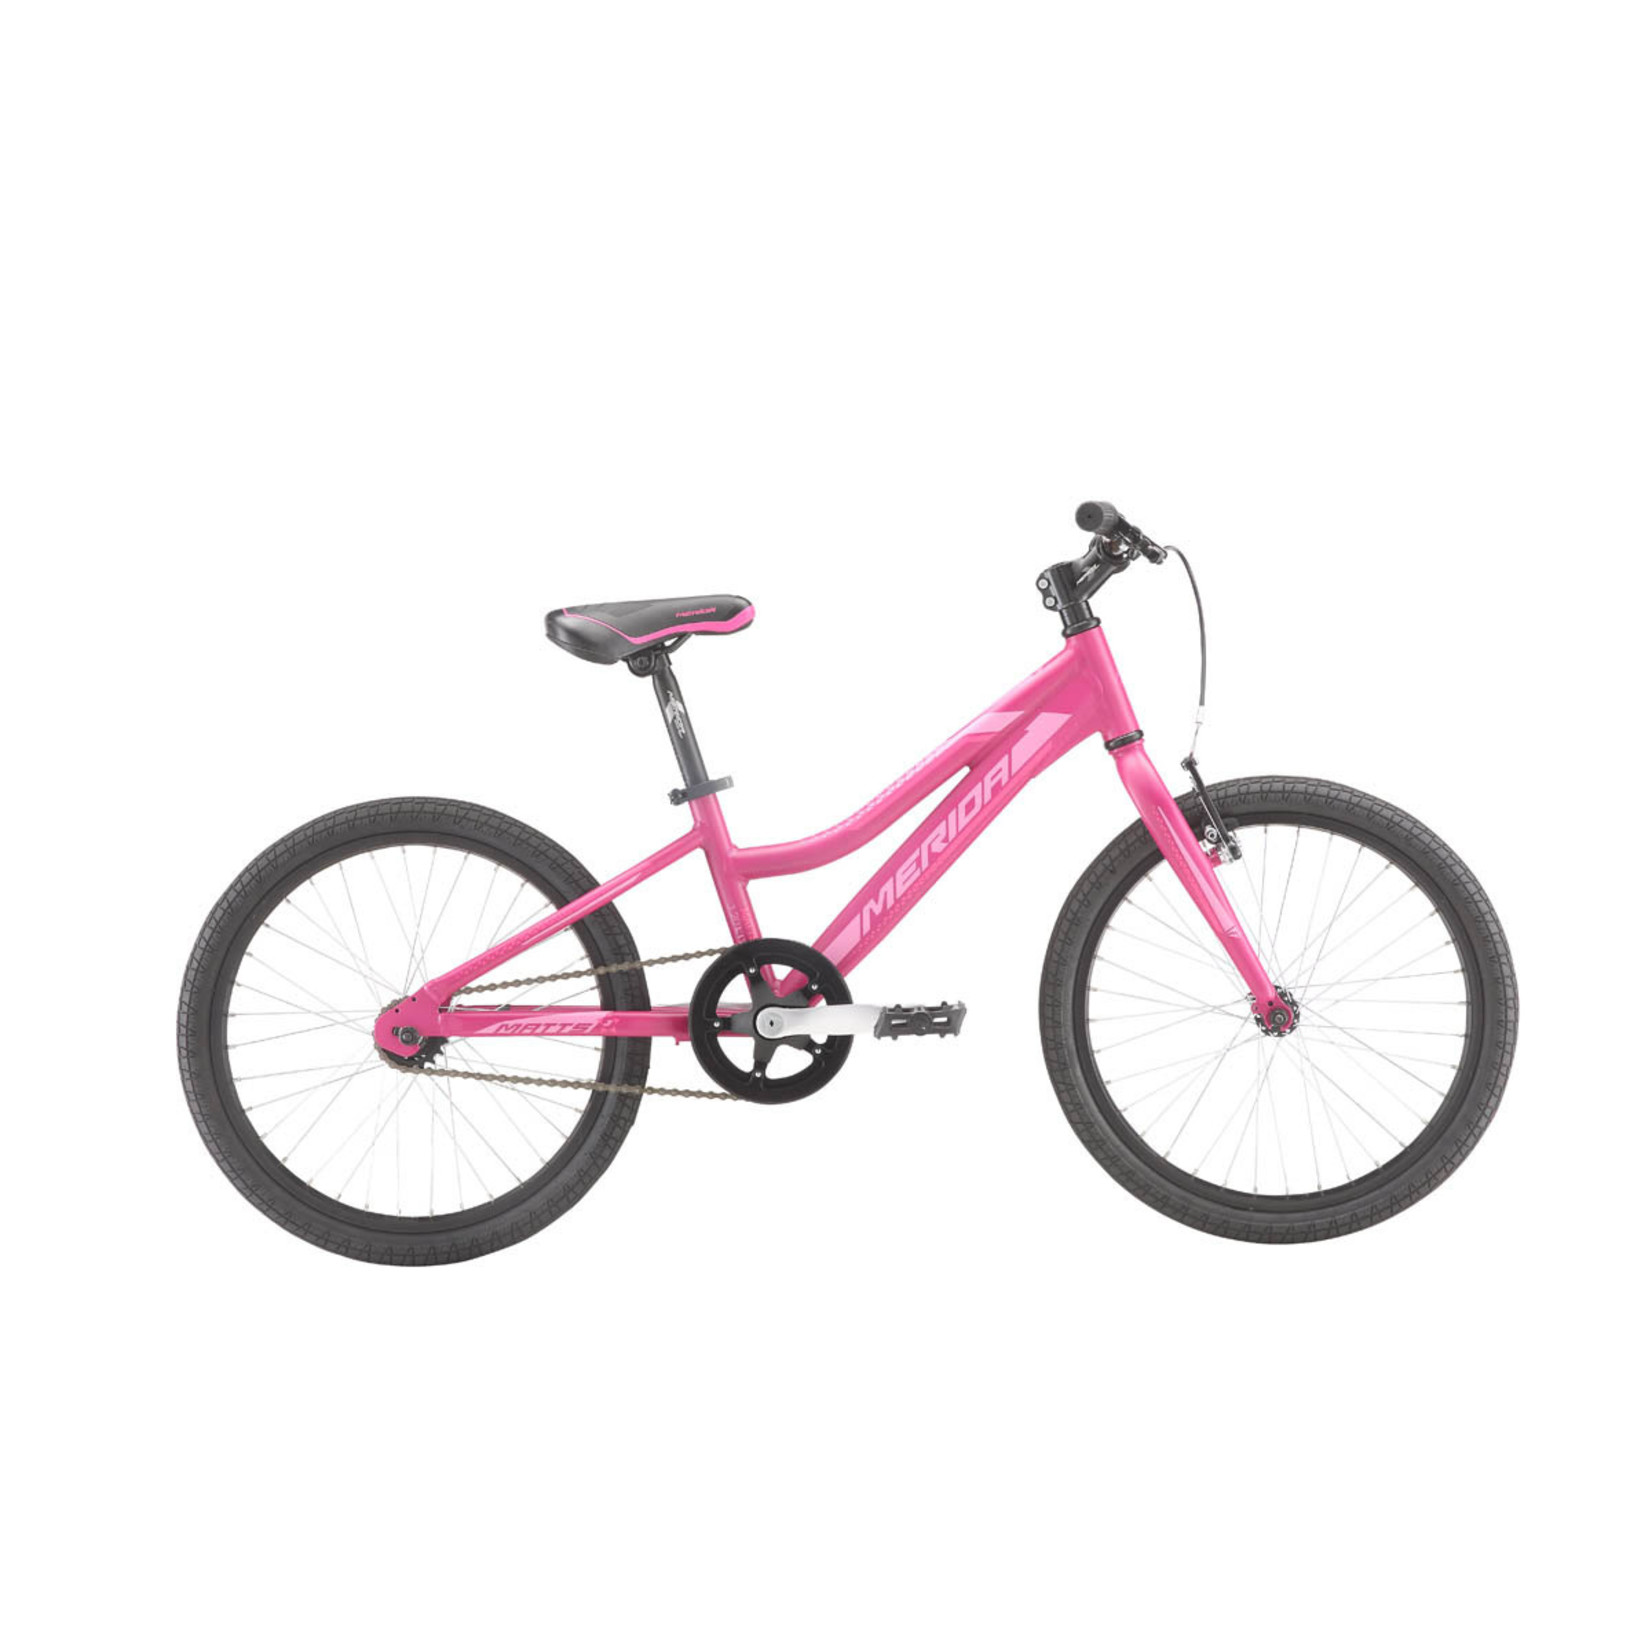 Merida Merida Matts J20 Lite Girls 20in Bike - Berry(Pink)